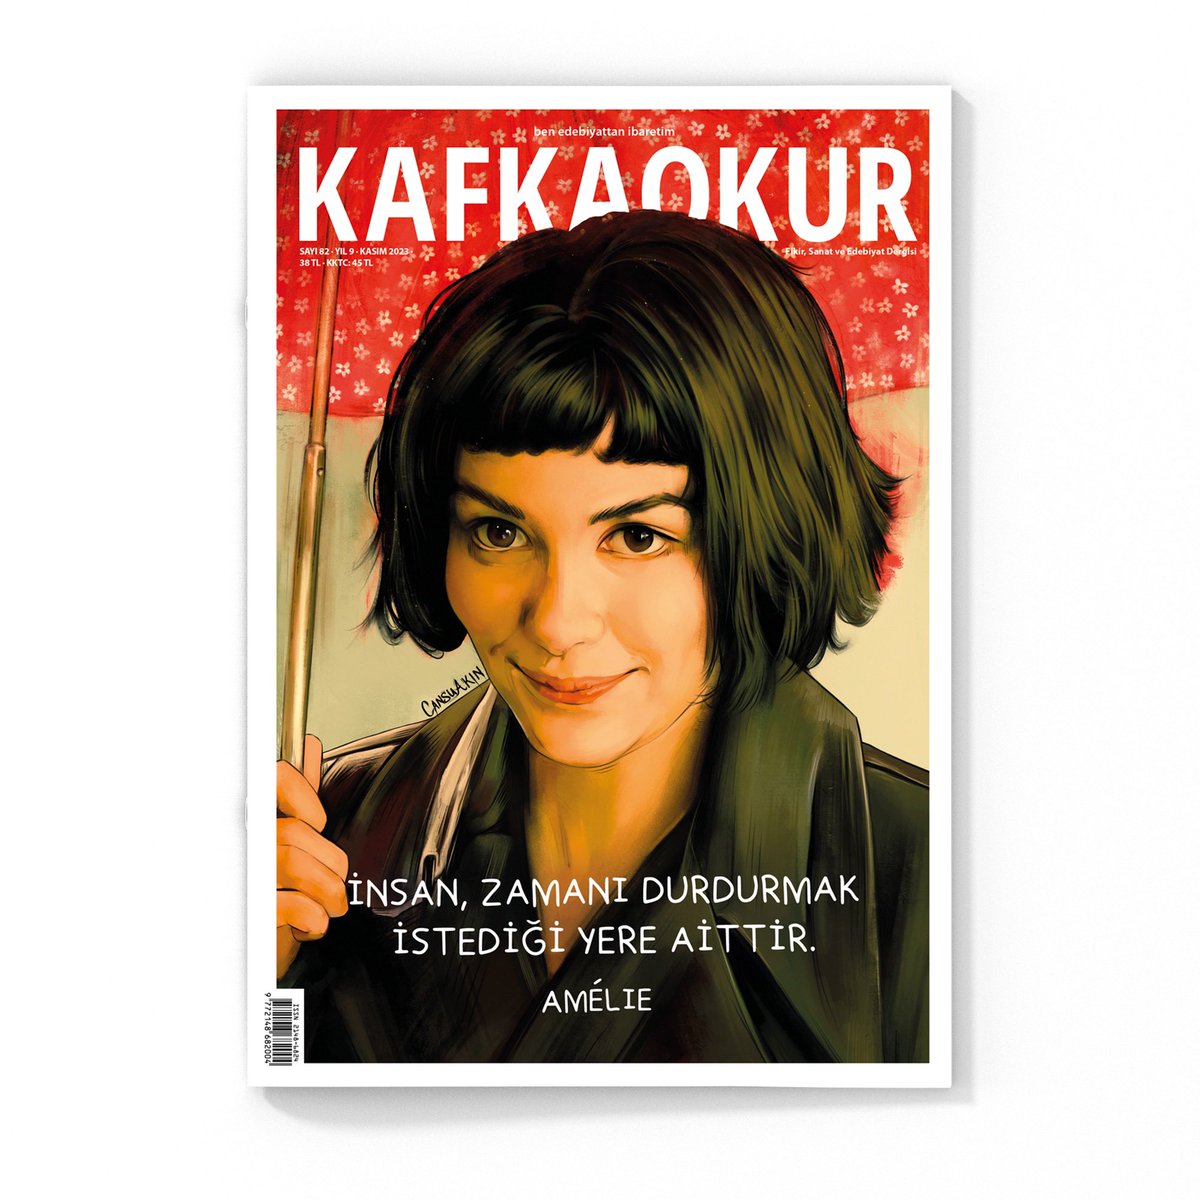 “İnsan, zamanı durdurmak istediği yere aittir.” — Amélie

KAFKAOKUR çıktı! Yarından itibaren D&R, Carrefour, Migros, Dost Kitabevi ile dergi ve gazete satan her yerde. #kafkaokur #amélie #jeanpierrejeunet 

✍️ Cansu Akın